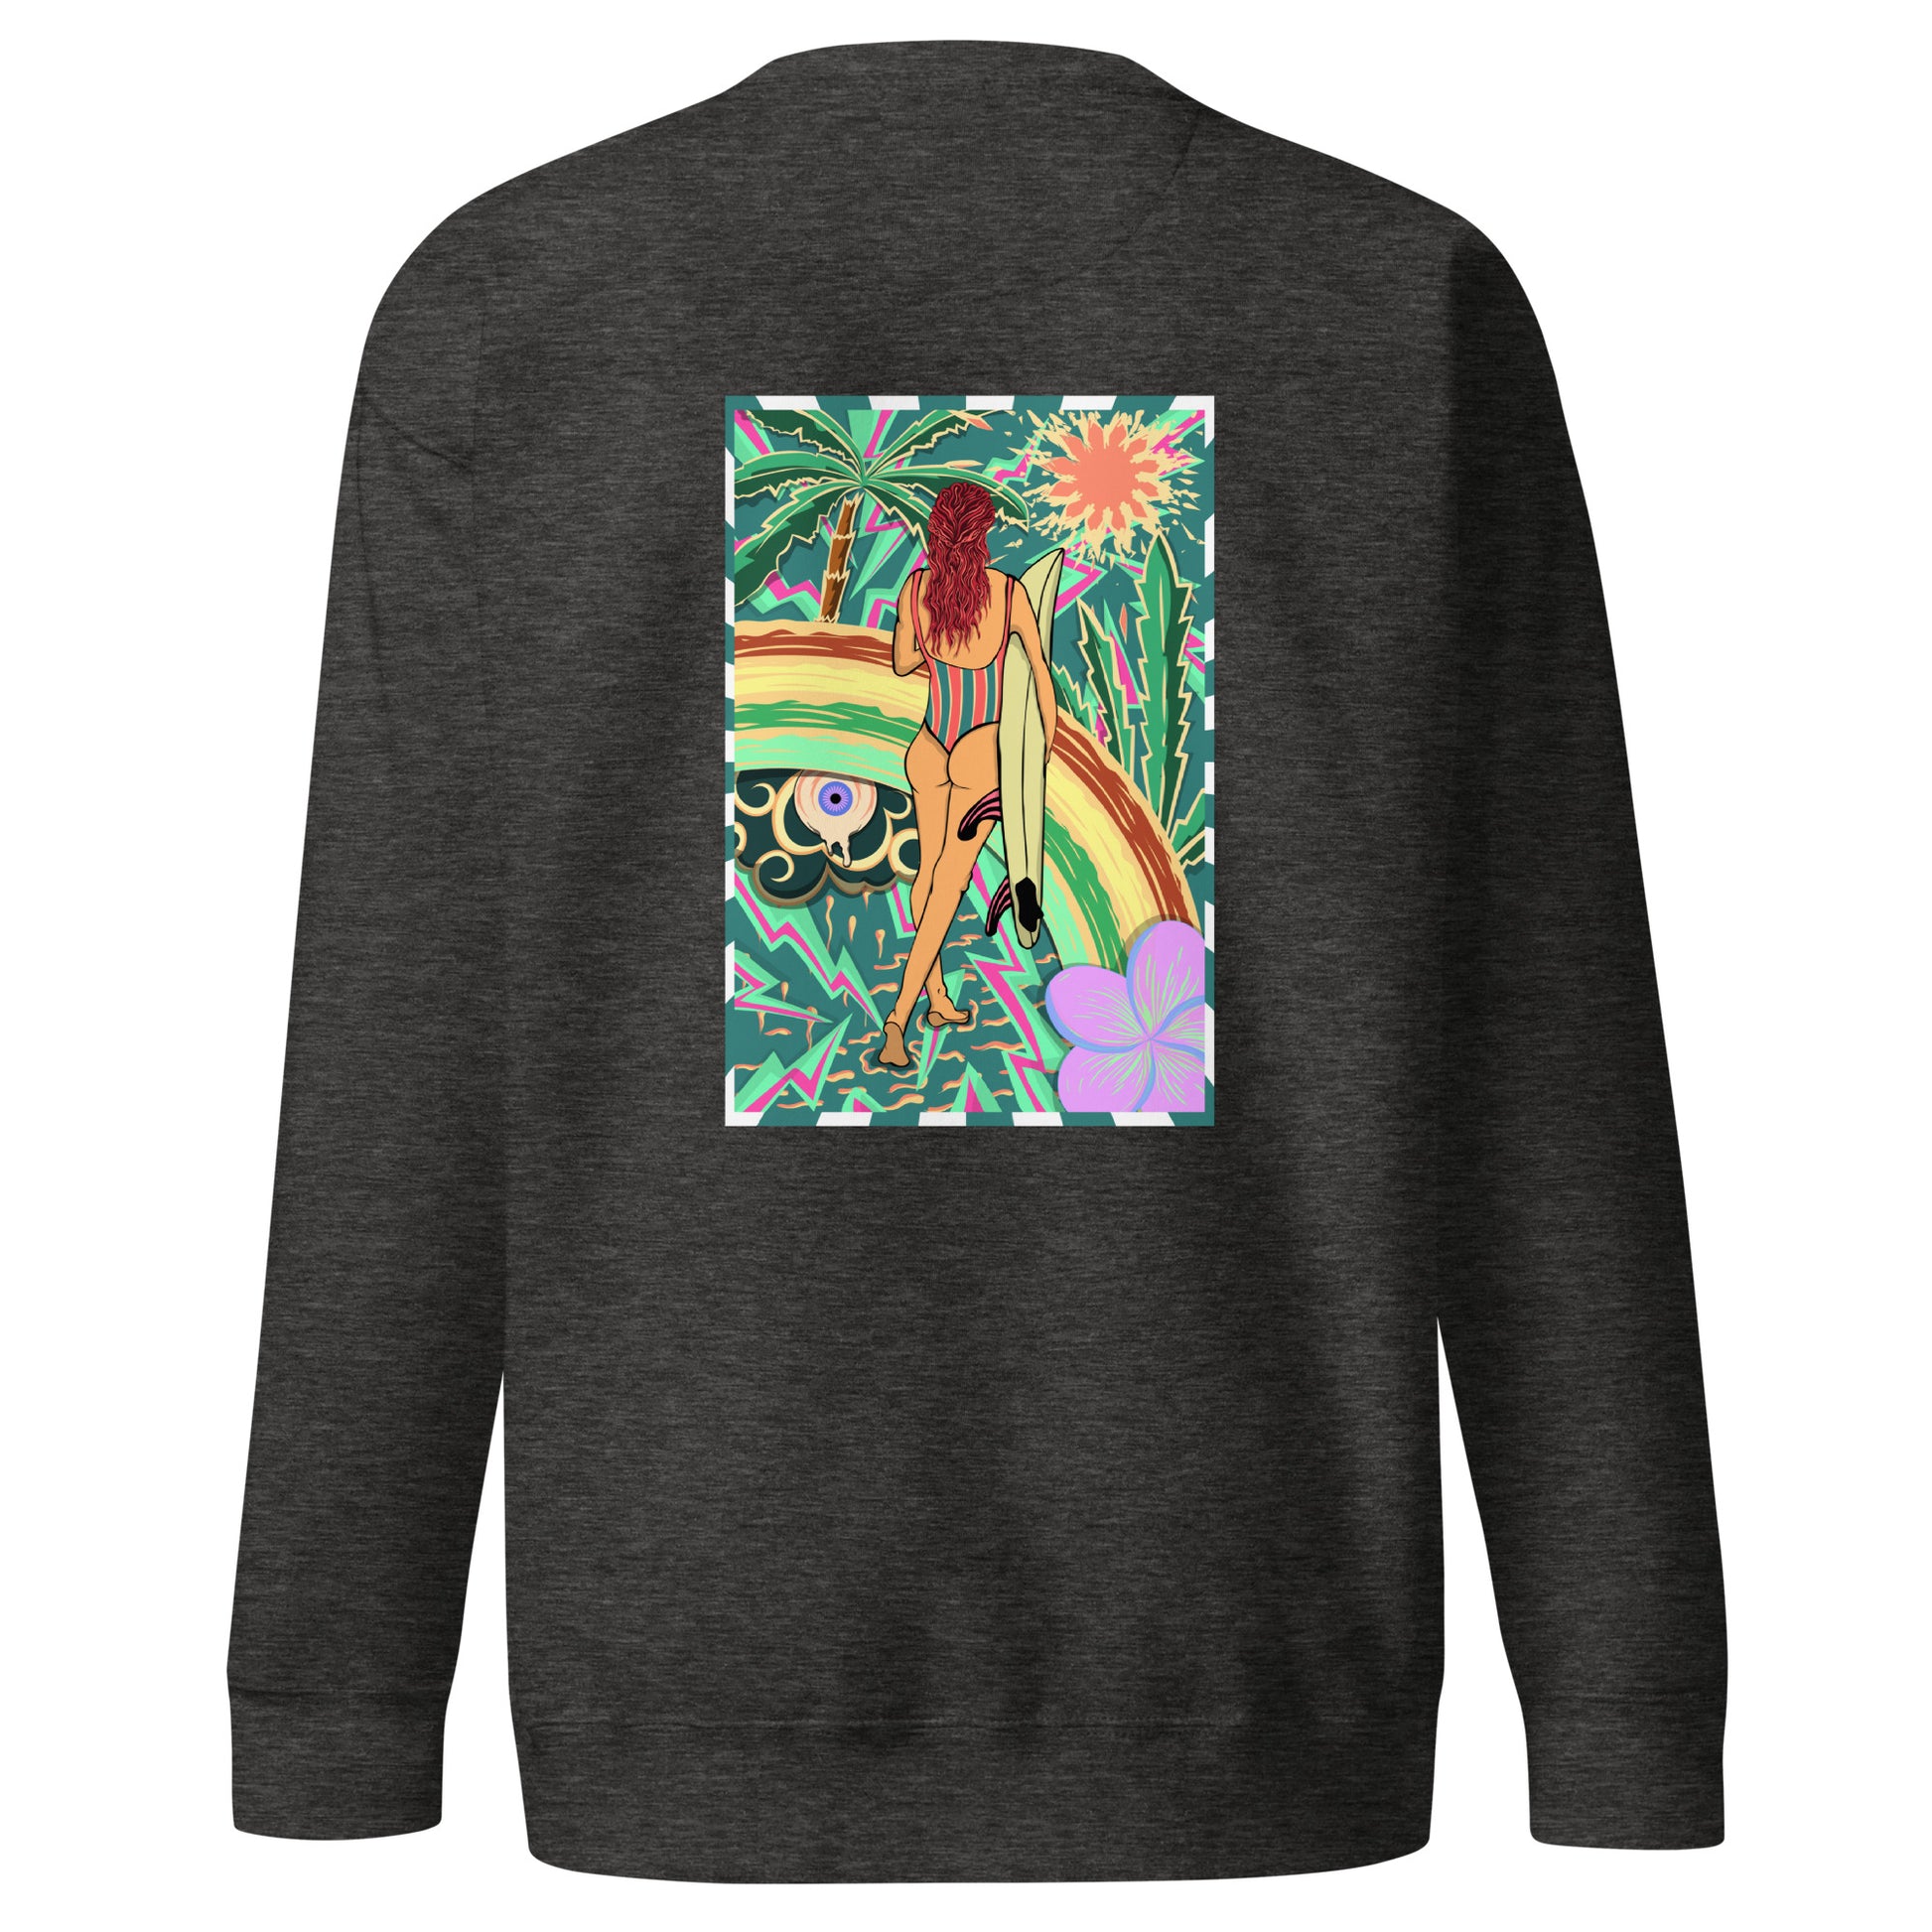 Sweatshirt surfeuse Walk Of Life psychédélique palmier fleur de vanille, sweat unisex couleur charcoal